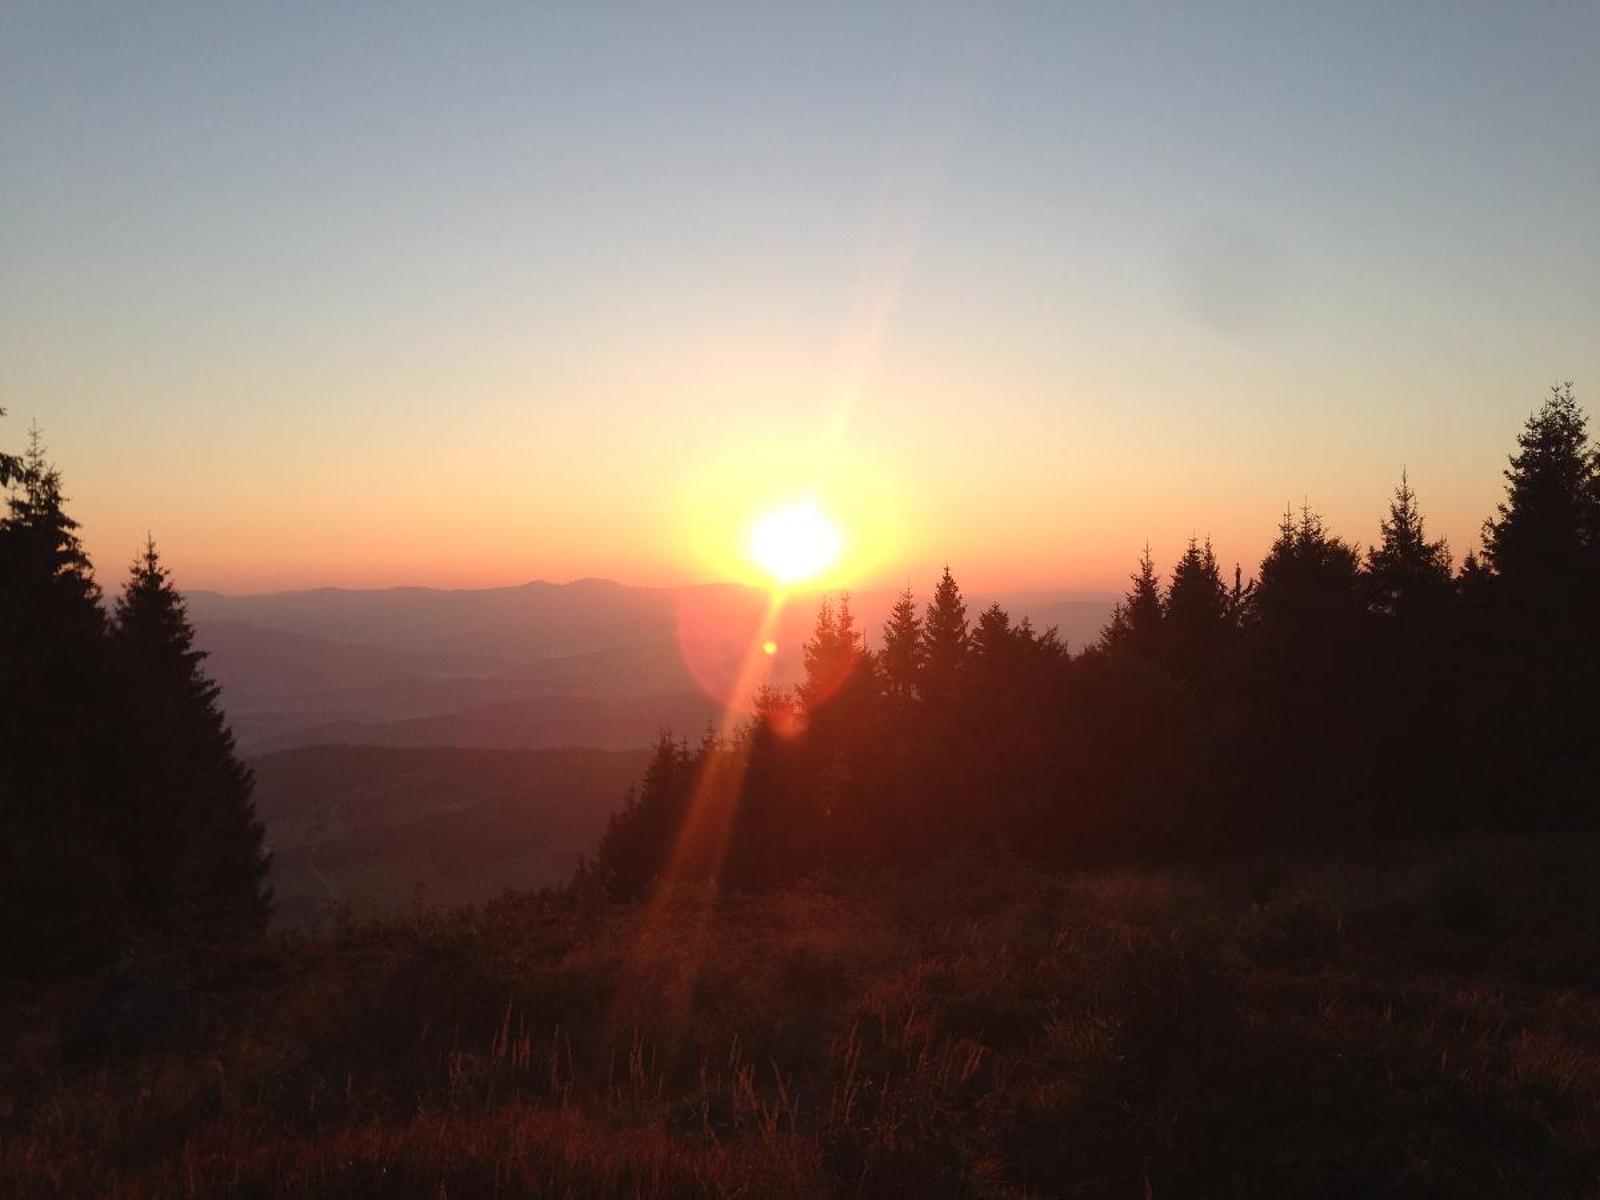 Sonnenaufgang auf dem Gipfel des Pröllers - mit Doris Metzger. Nach einem Aufstieg (ca. 3 km und 200 Höhenmeter), der den Kreislauf in Schwung bringt, werden Sie mit einem Sonnenaufgang über den Bergen des Bayerwaldes und dem geistlichen Morgenimpulsbelohnt. Taschenlampe empfohlen! Treffpu...